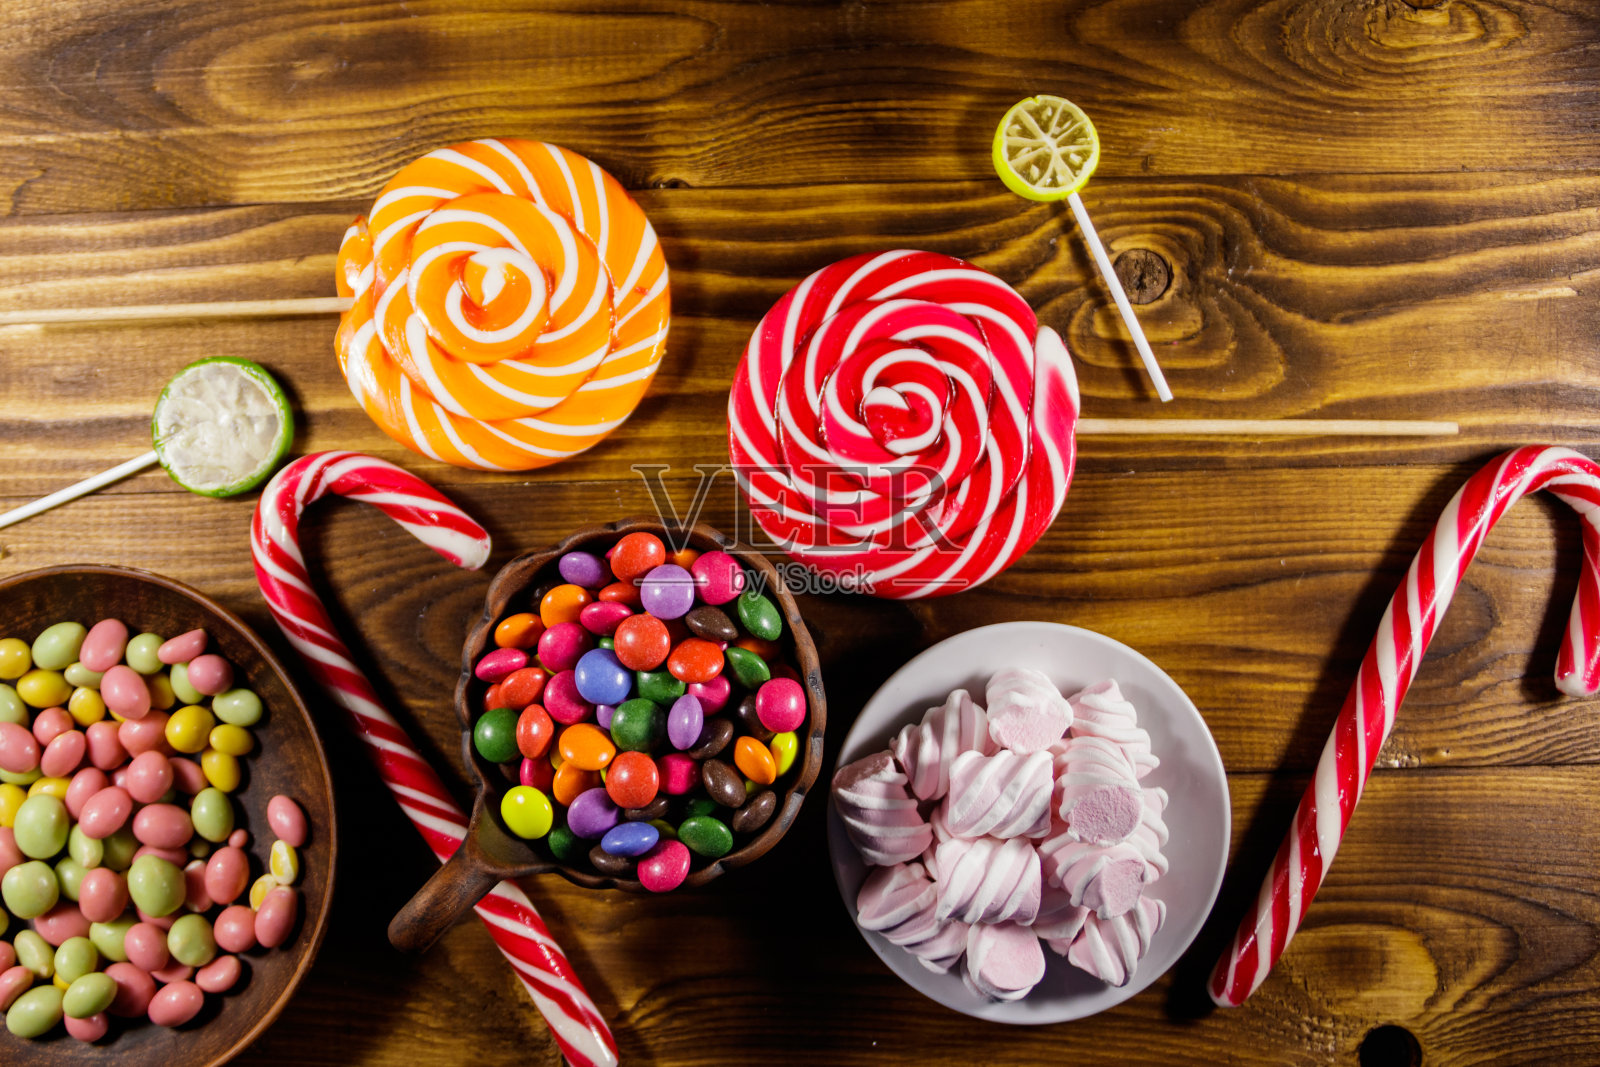 木桌上摆放着五颜六色的巧克力糖果、棒棒糖、甘蔗糖和棉花糖照片摄影图片